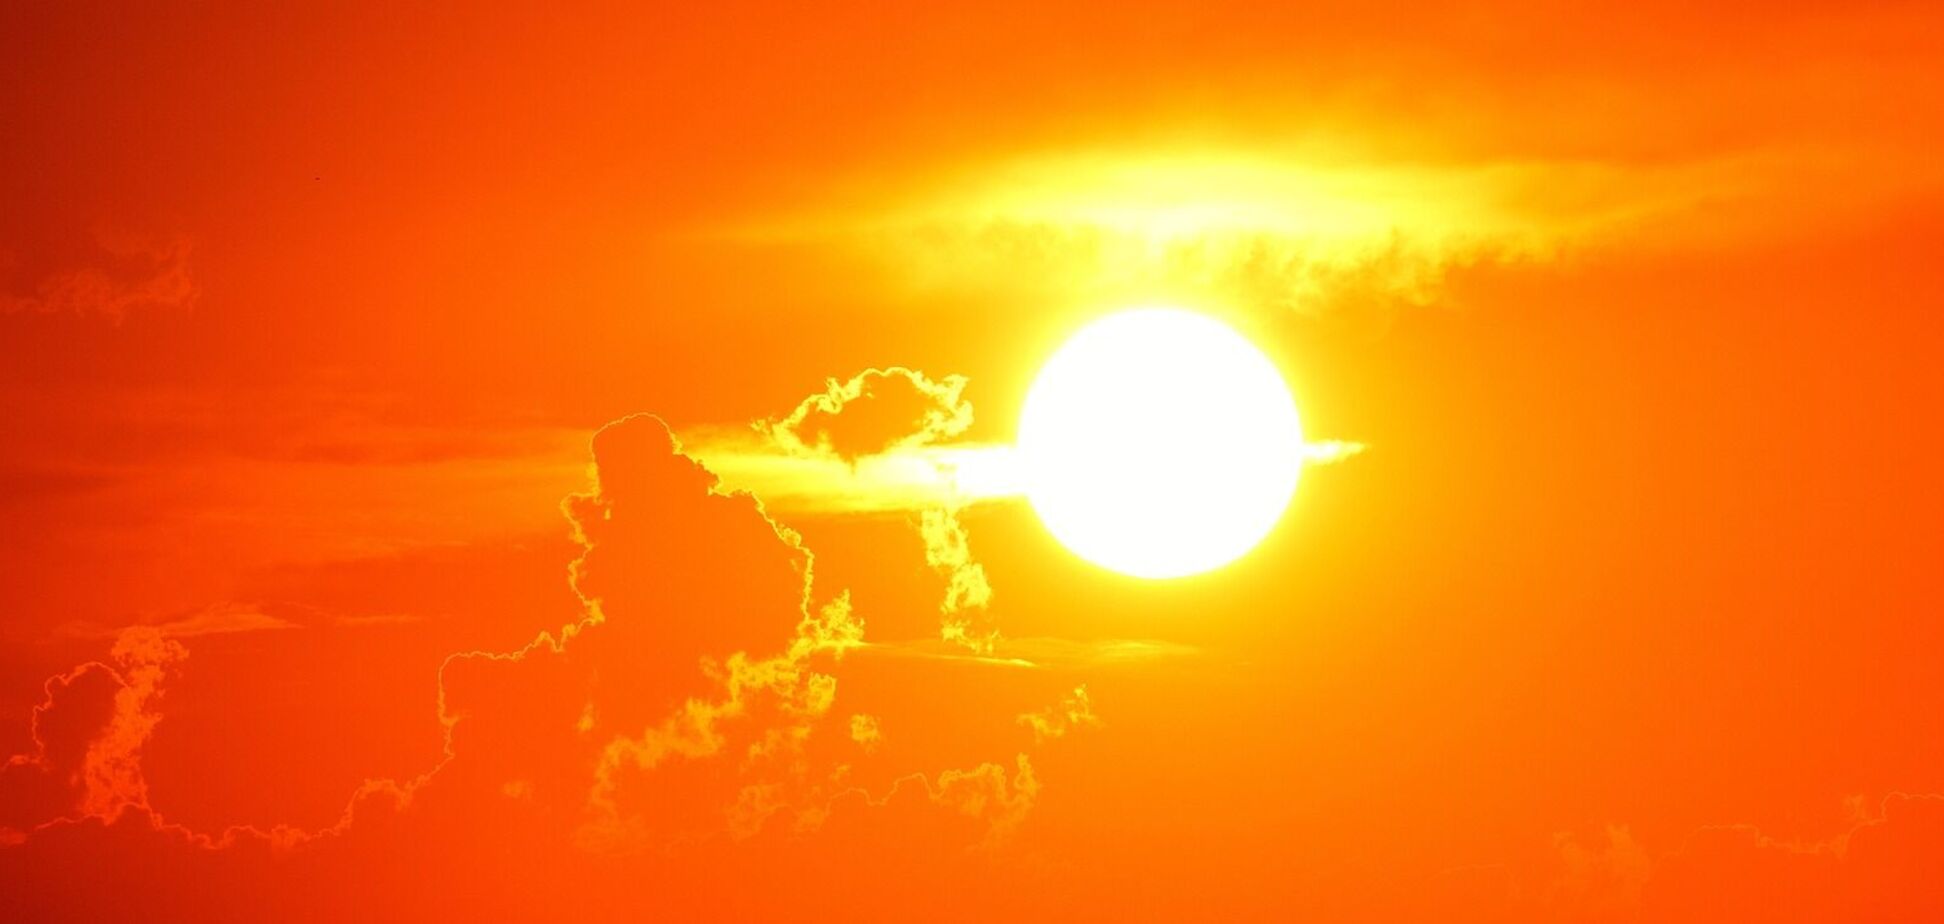 Астрономы NASA сделали уникальное фото 'улыбающегося' Солнца и объяснили природу явления. Фото